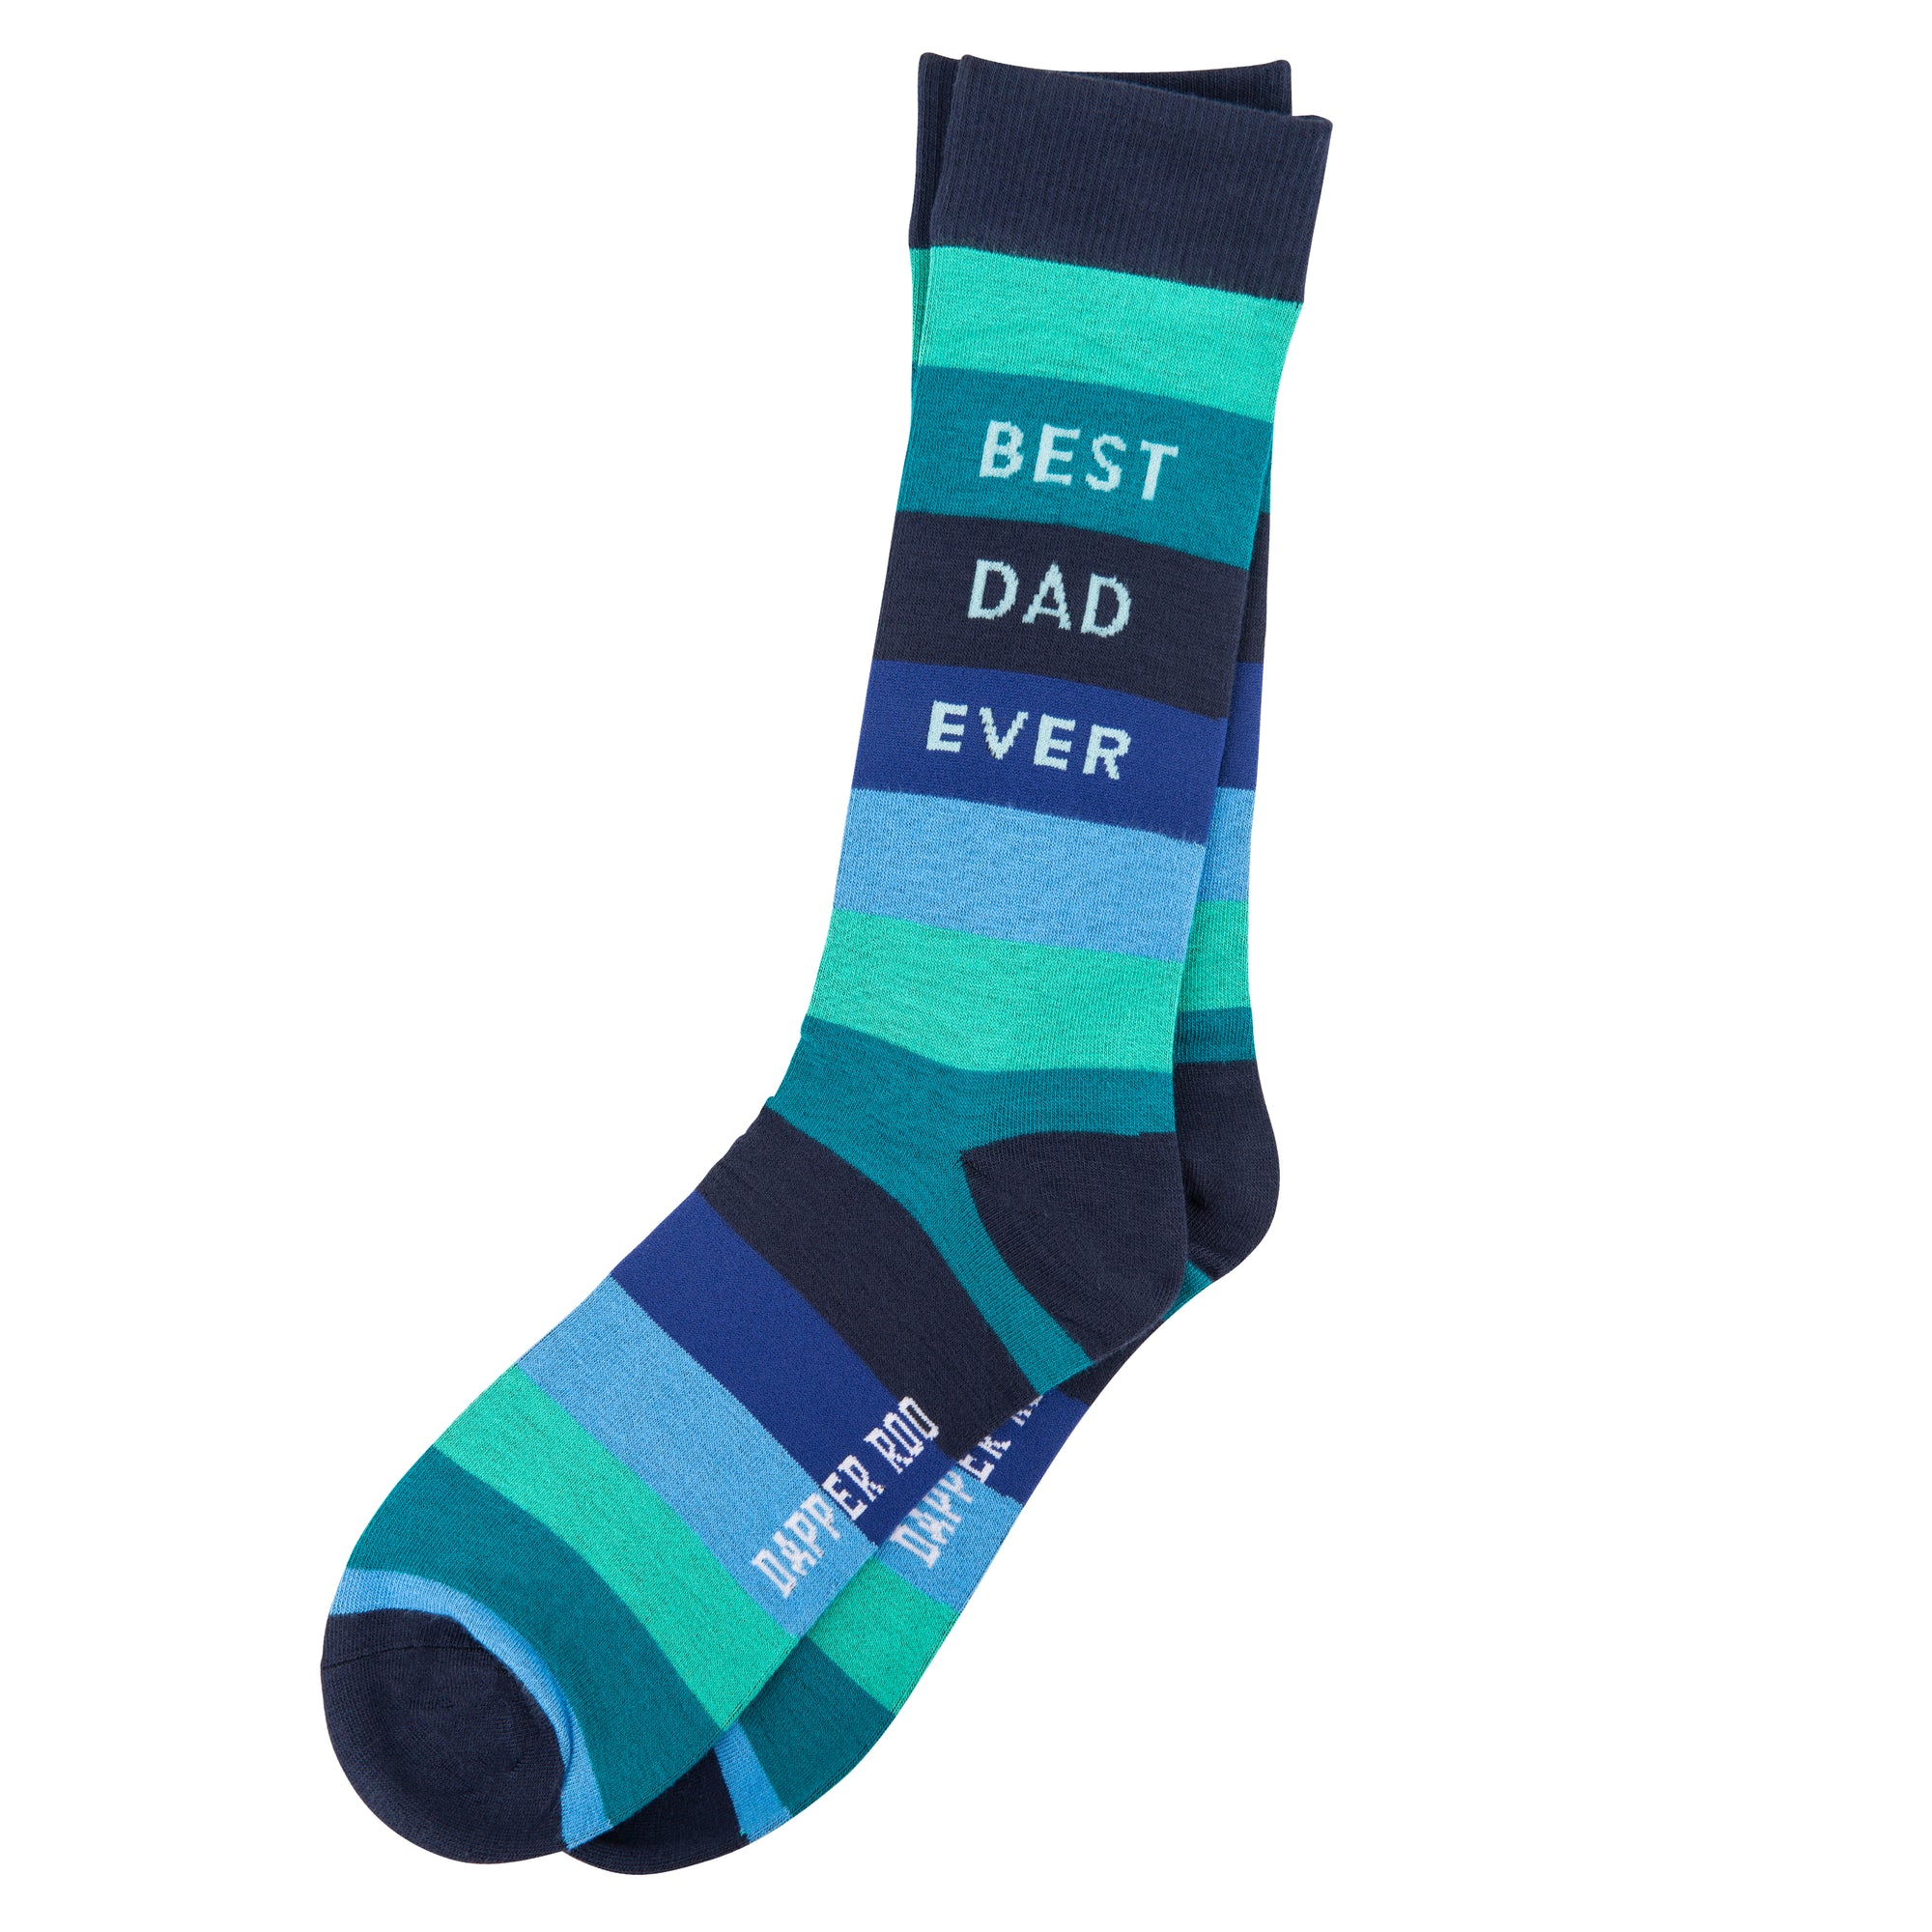 Best Dad Ever Bamboo Socks by Dapper Roo, Socks, Black, Blue, Green, White, SK2020, Bamboo, Elastane, Nylon, Elastic, Men's Socks, Socks for Men, Clinks.com